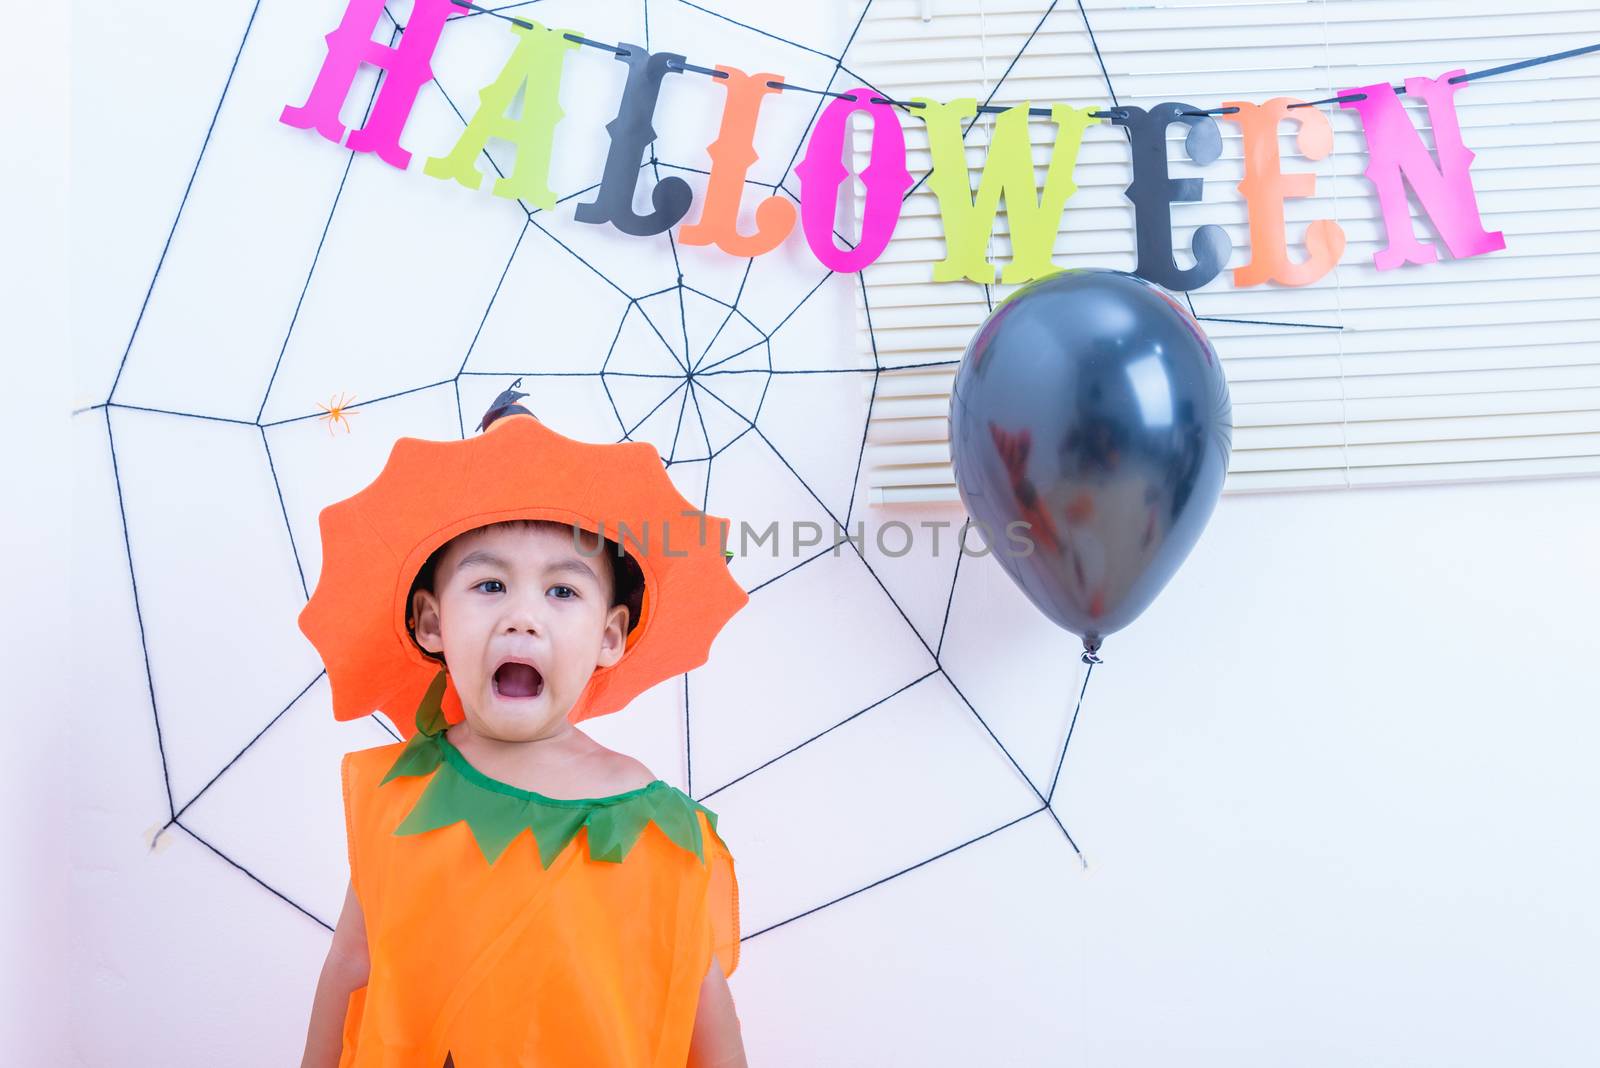 Funny happy kid in Halloween costume with pumpkin Jack by Sorapop